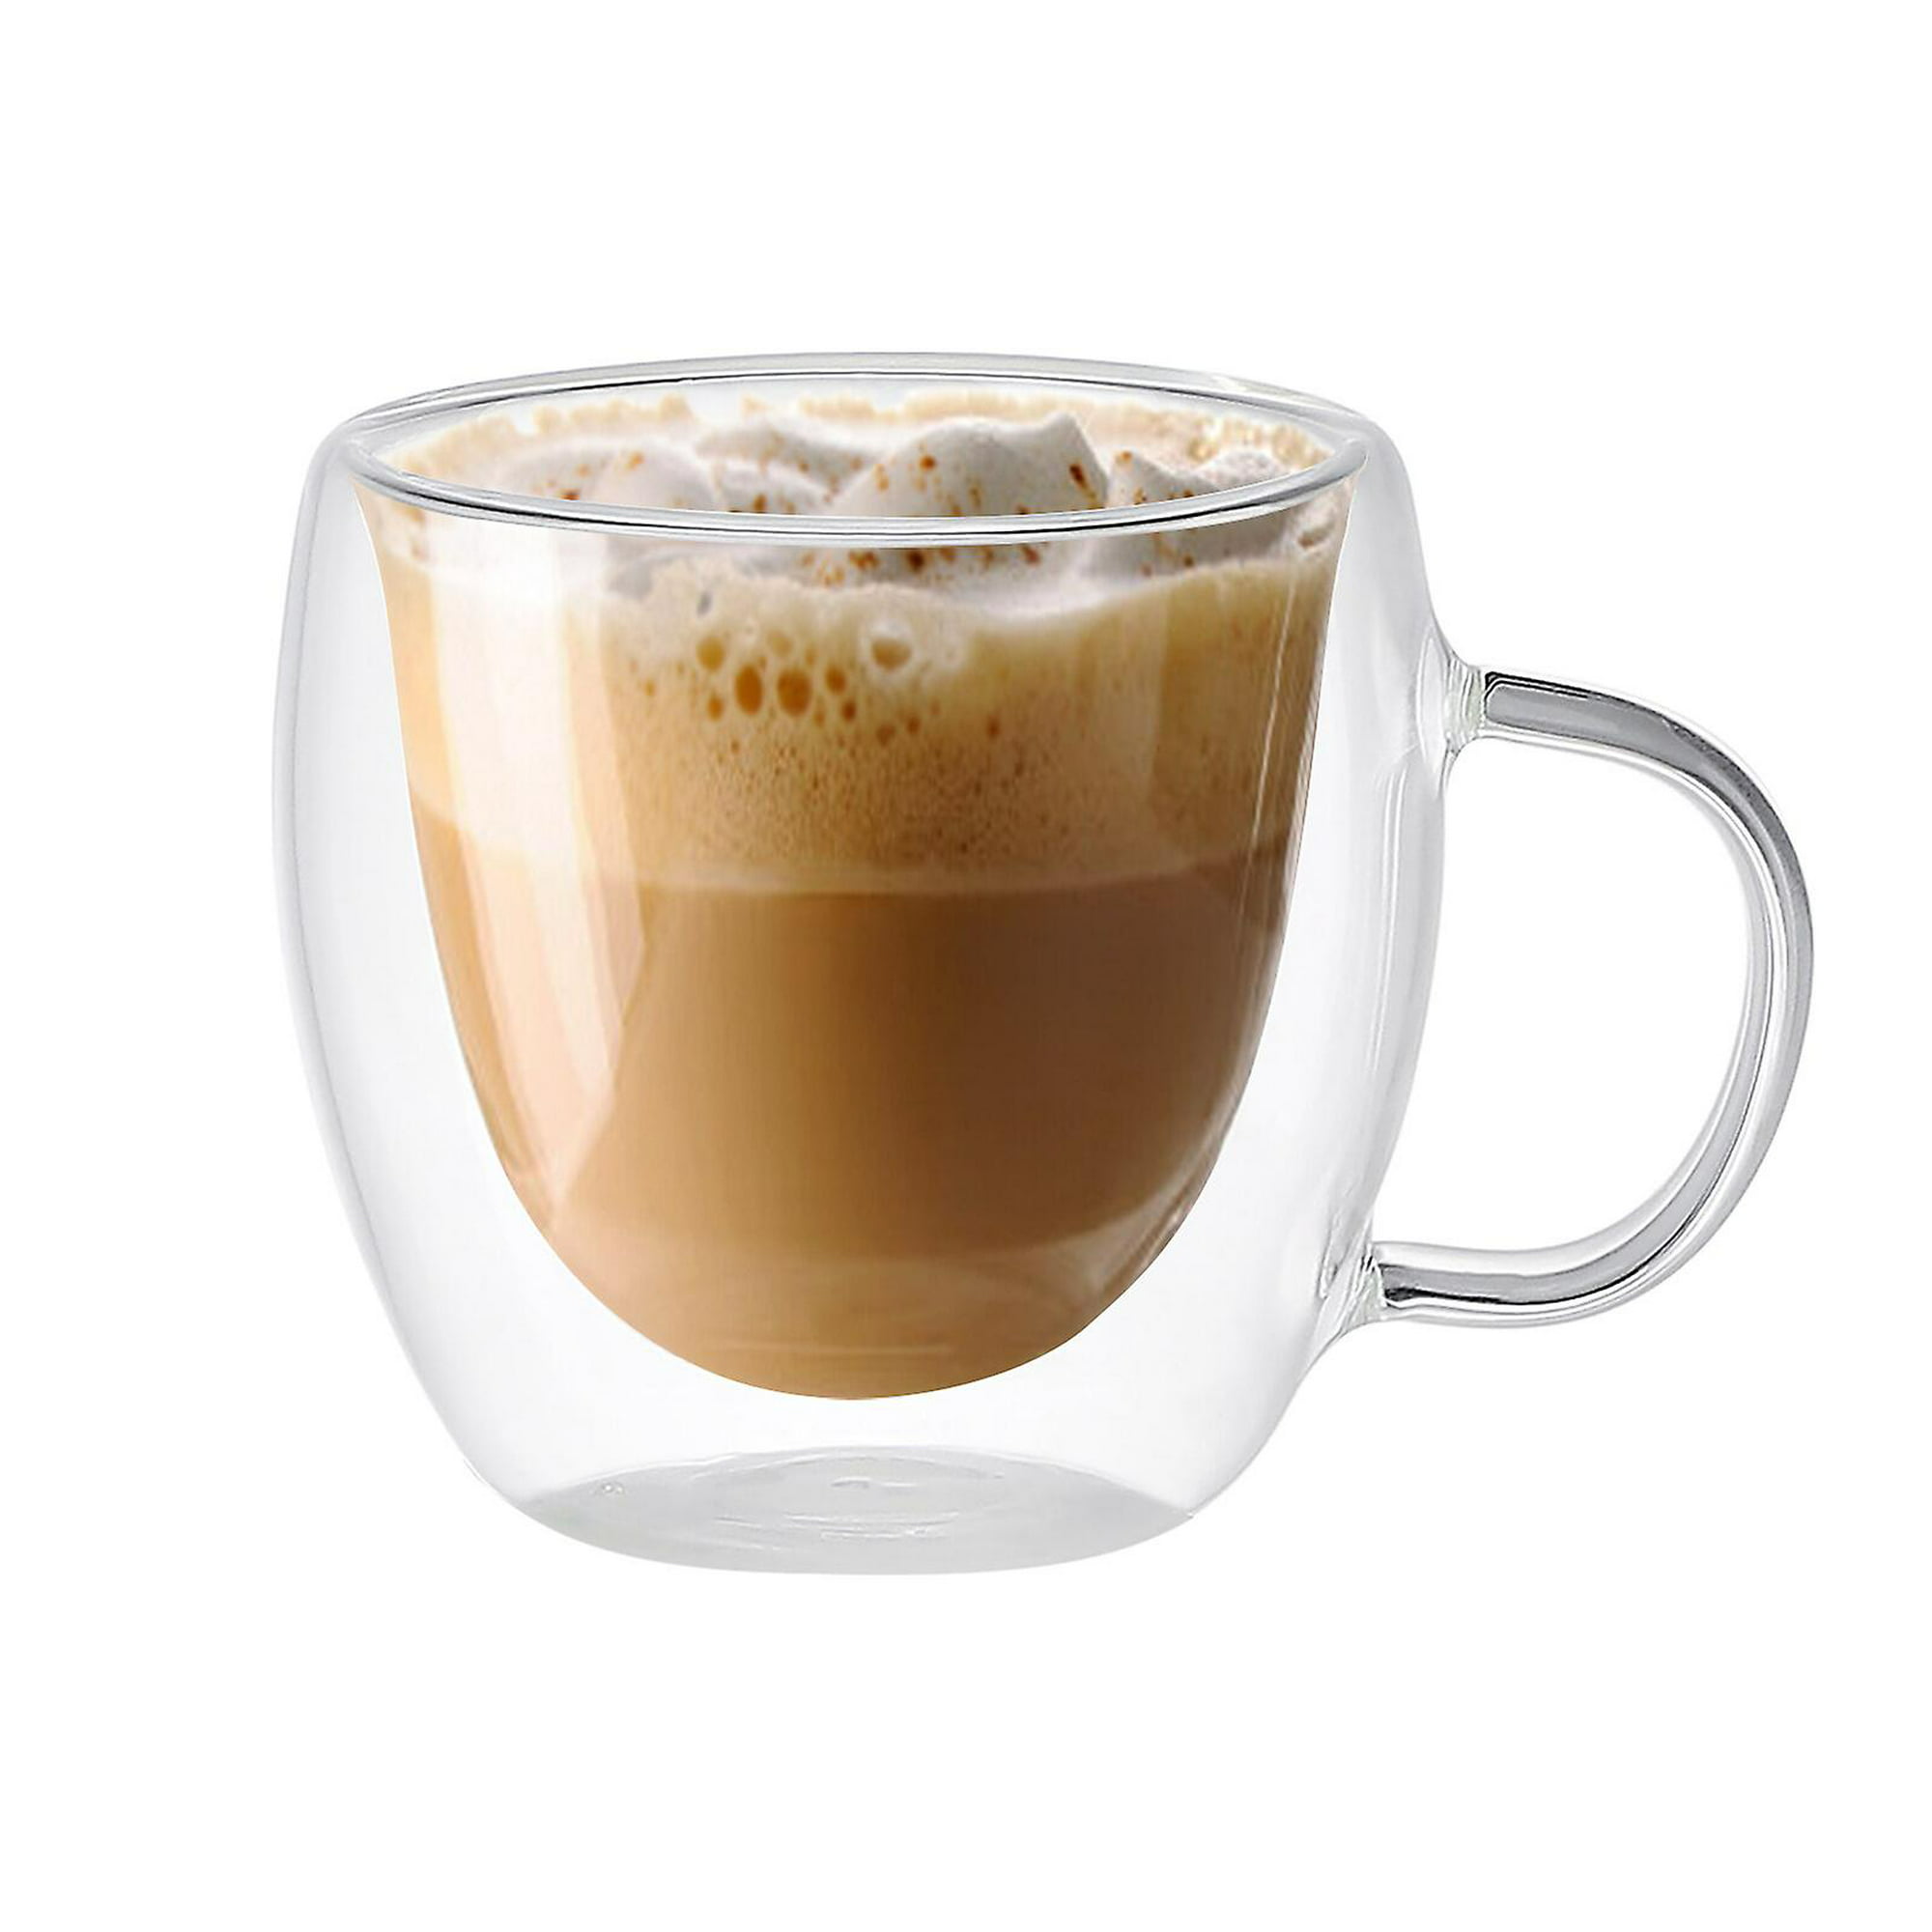  YUNCANG Tazas de café de doble pared, (4 unidades) de 16 onzas,  vidrio transparente con asa, sin sular, capuchino, té, tazas de latte,  vasos de bebidas resistentes al calor : Hogar